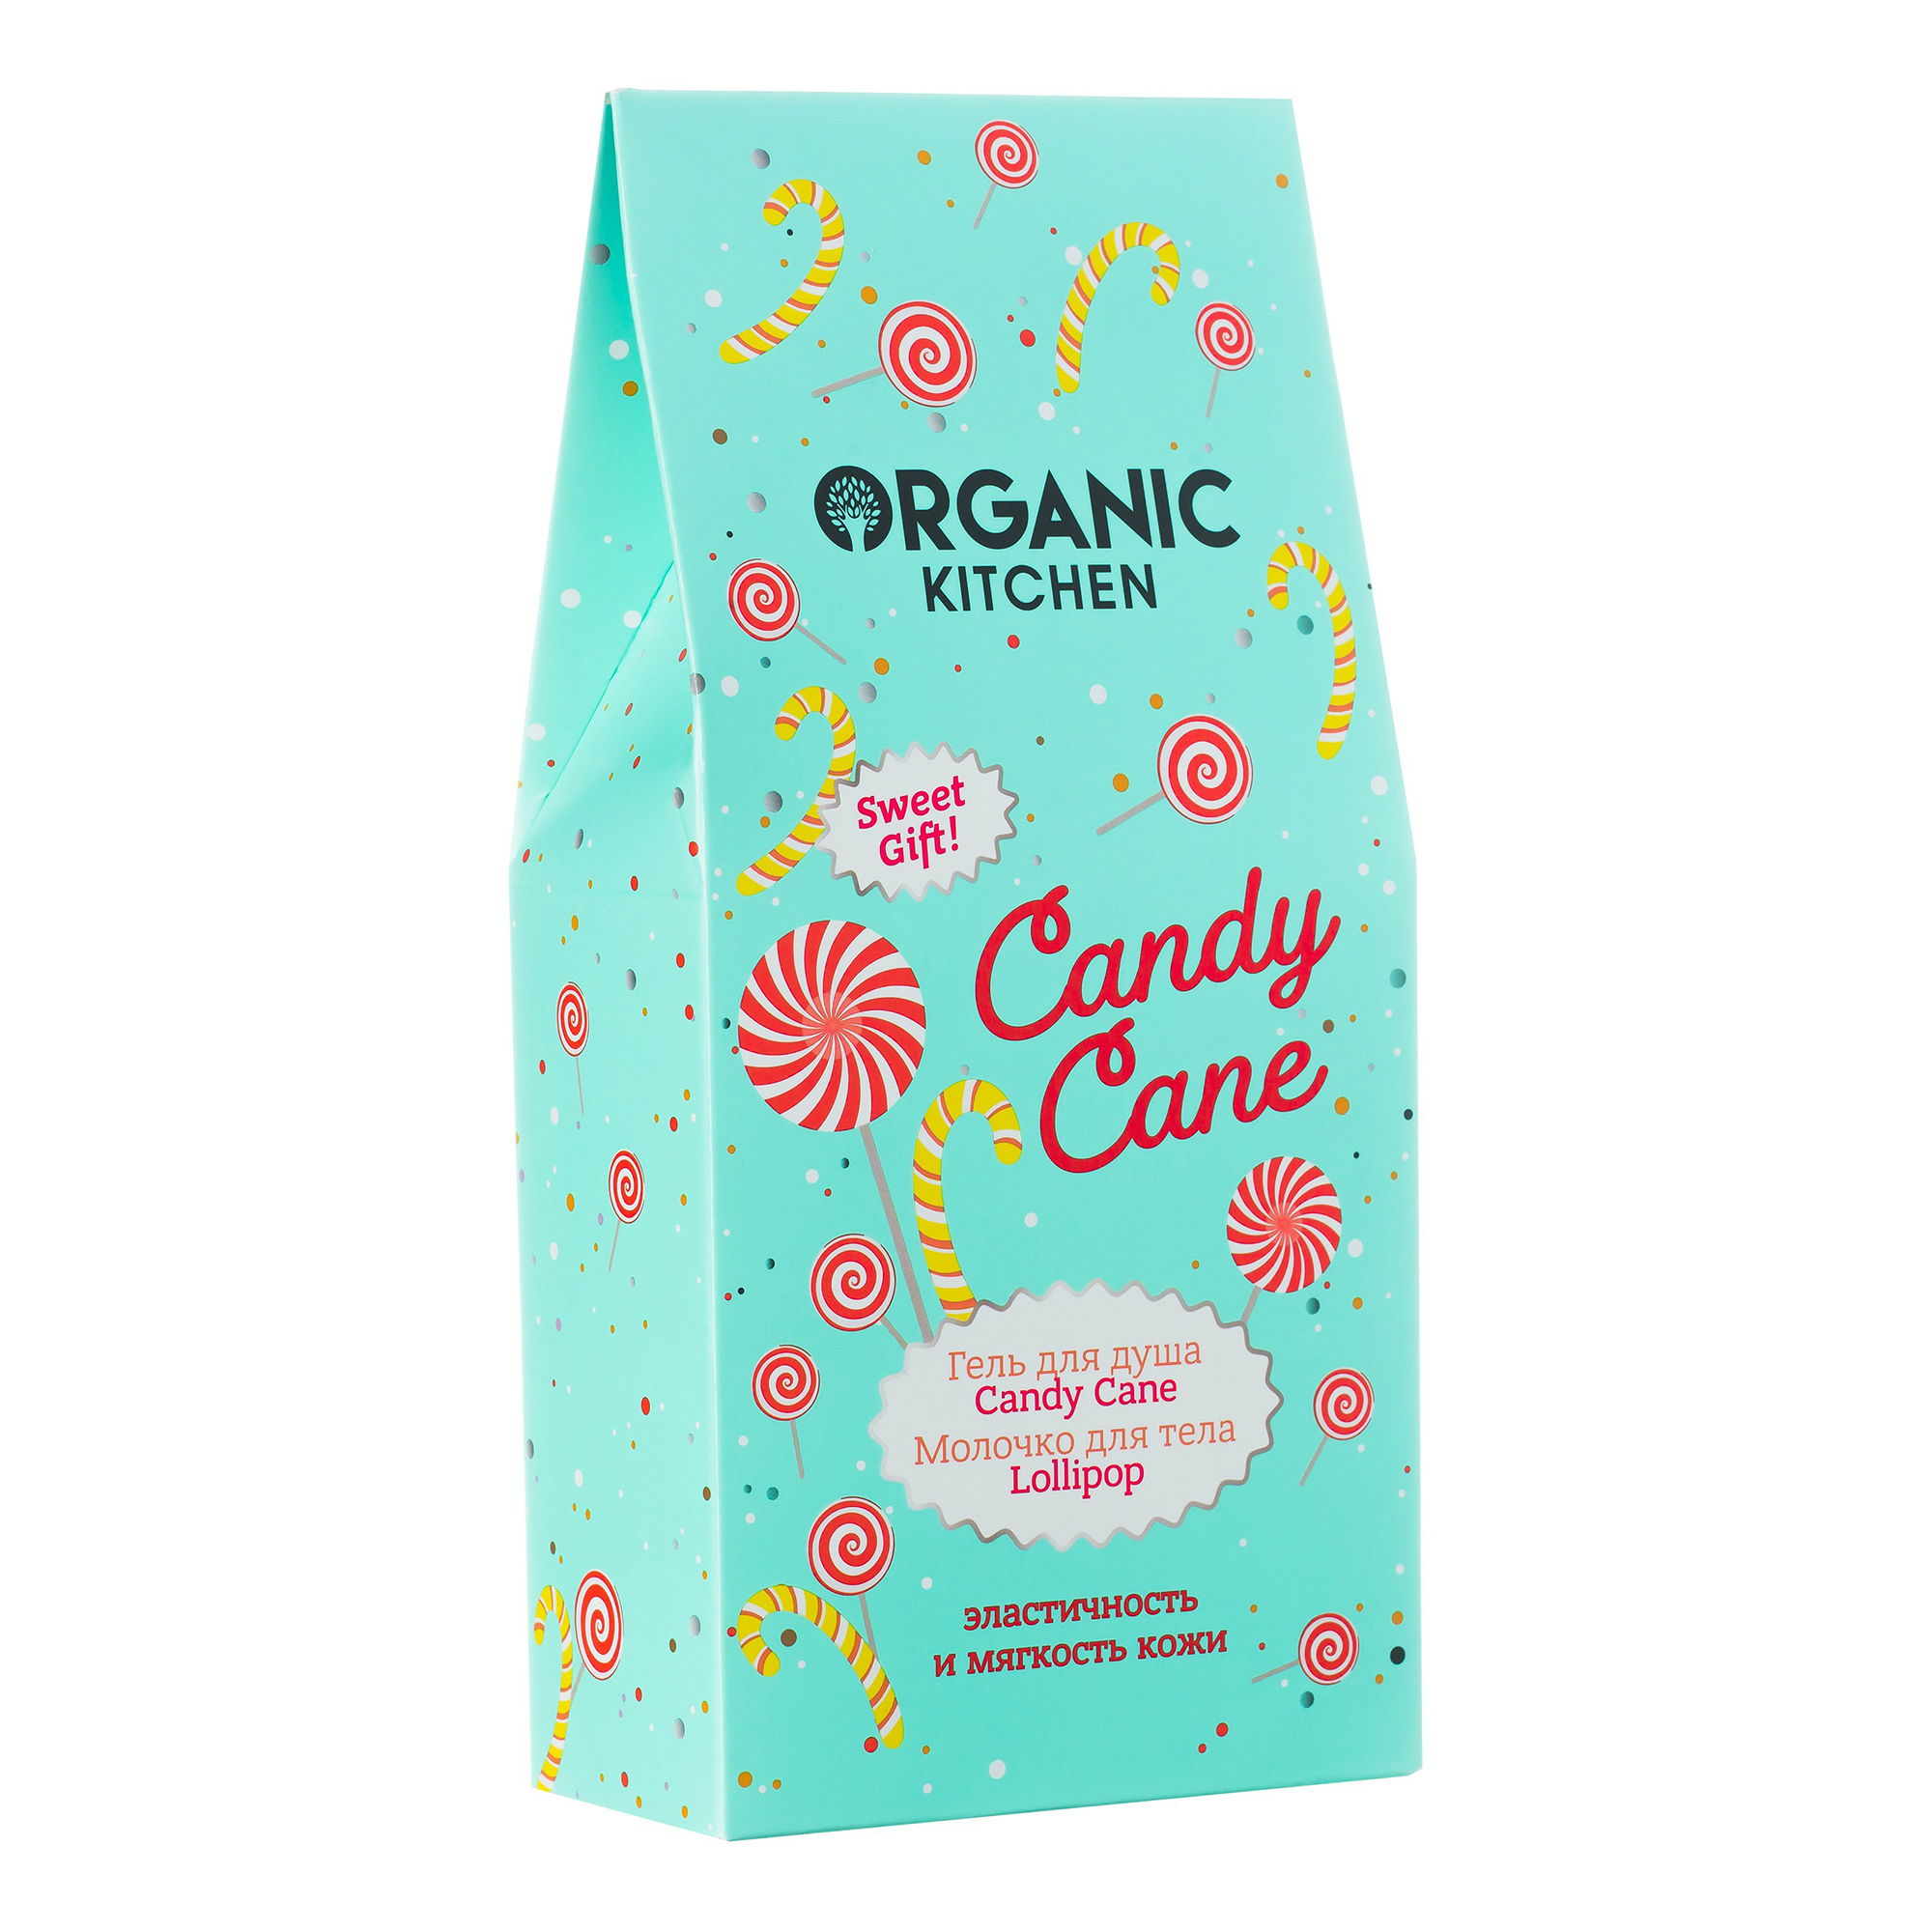 Набор косметических средств для тела Organic Kitchen Candy Cane 2 предмета набор салфеток этель kitchen оранжевый 30х40 см 2 шт 100% хлопок саржа 220 г м2